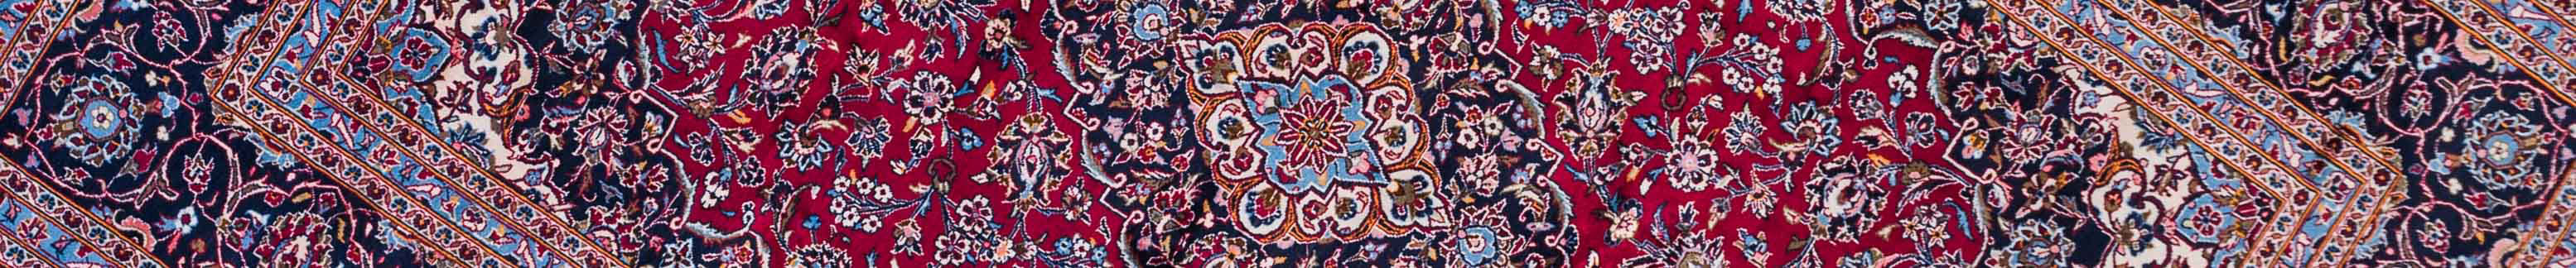 Kashan Persian Carpet Rug N1Carpet Canada Montreal Tapis Persan 2500